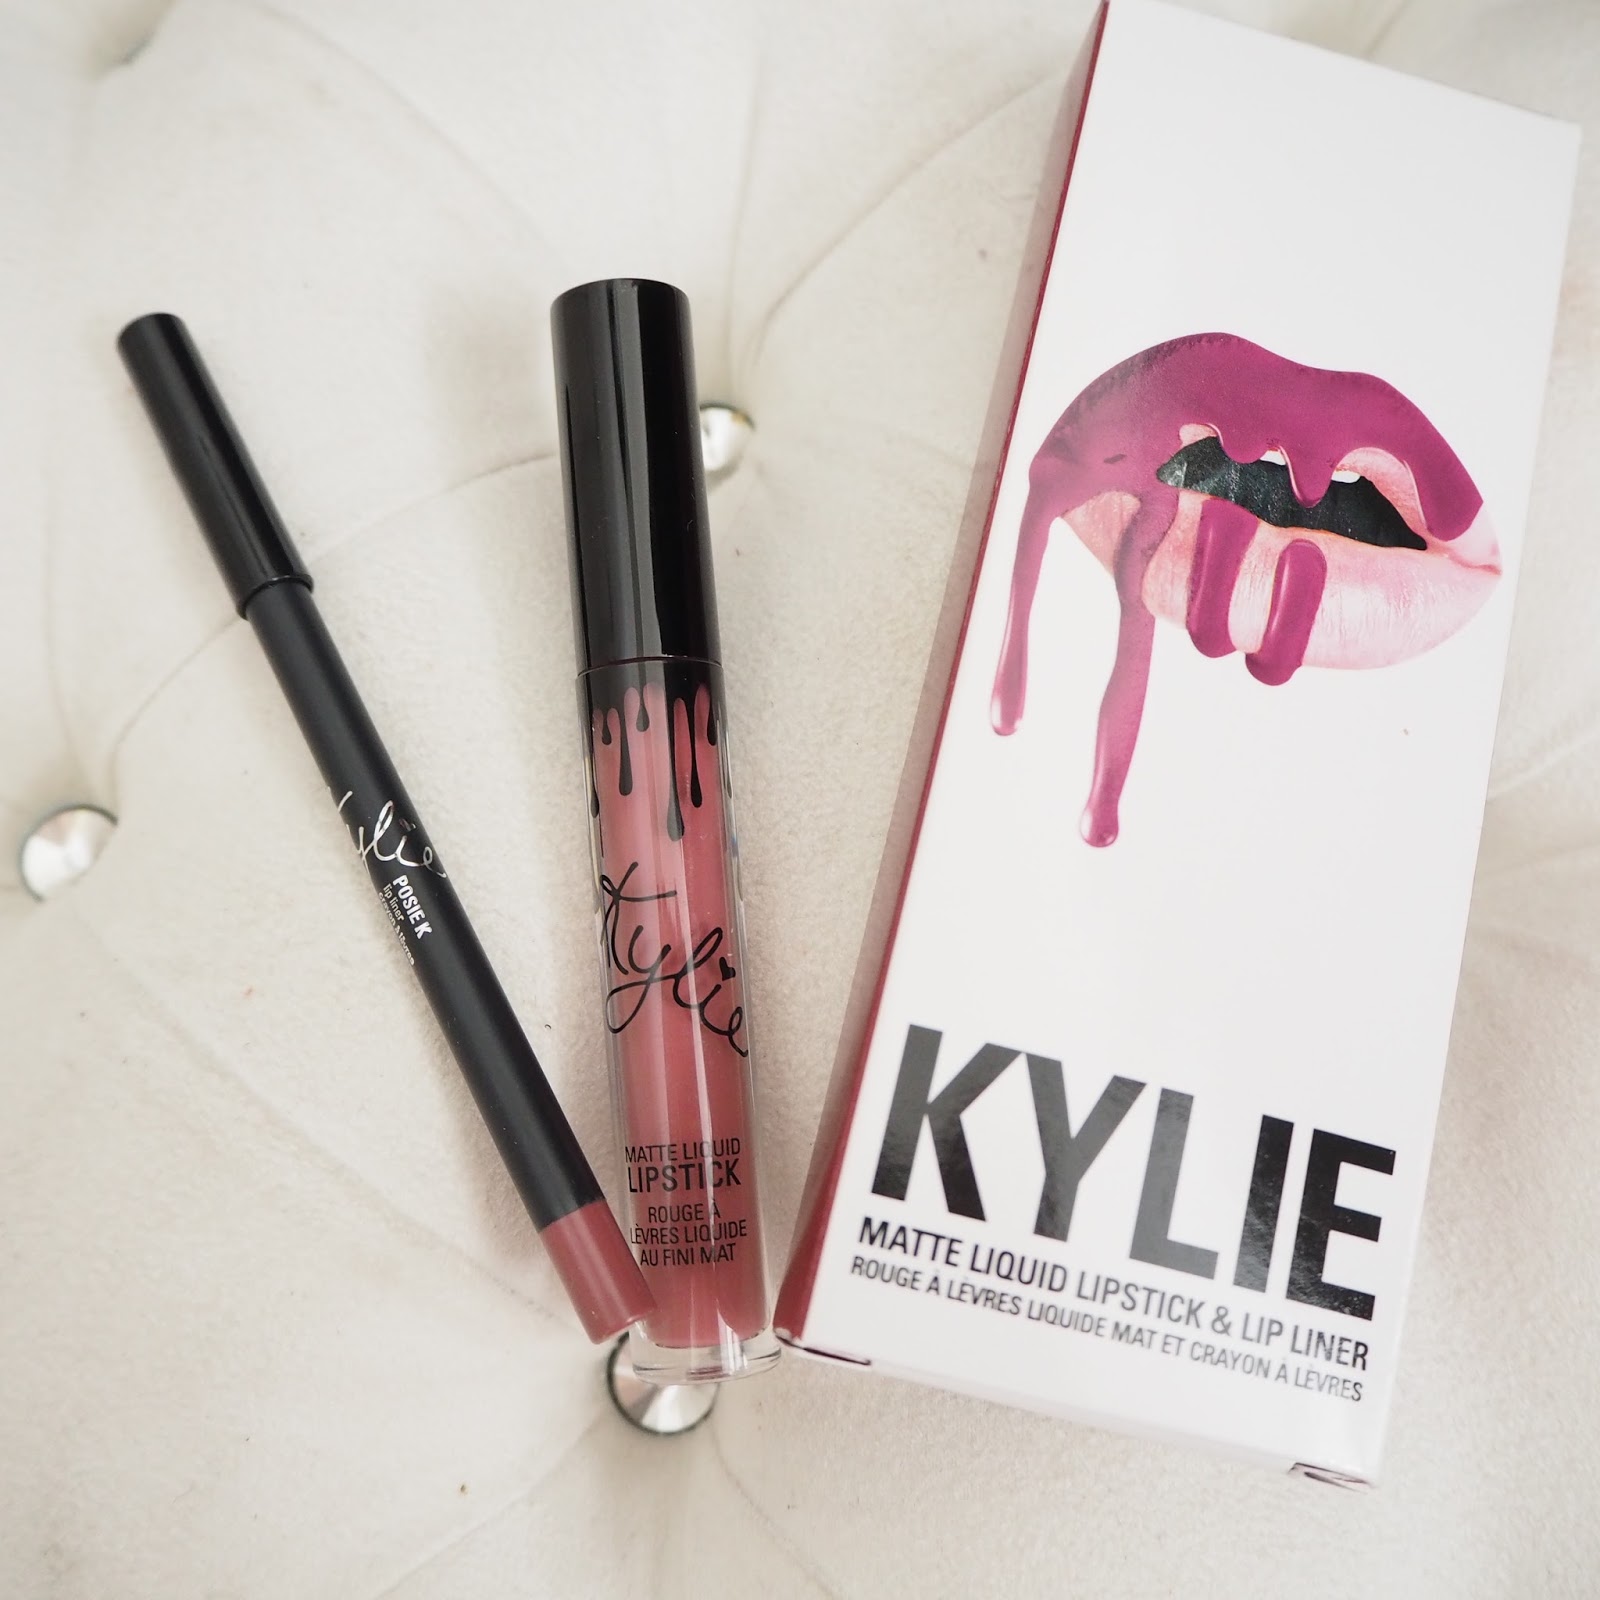 Kylie lip kit in Posie K